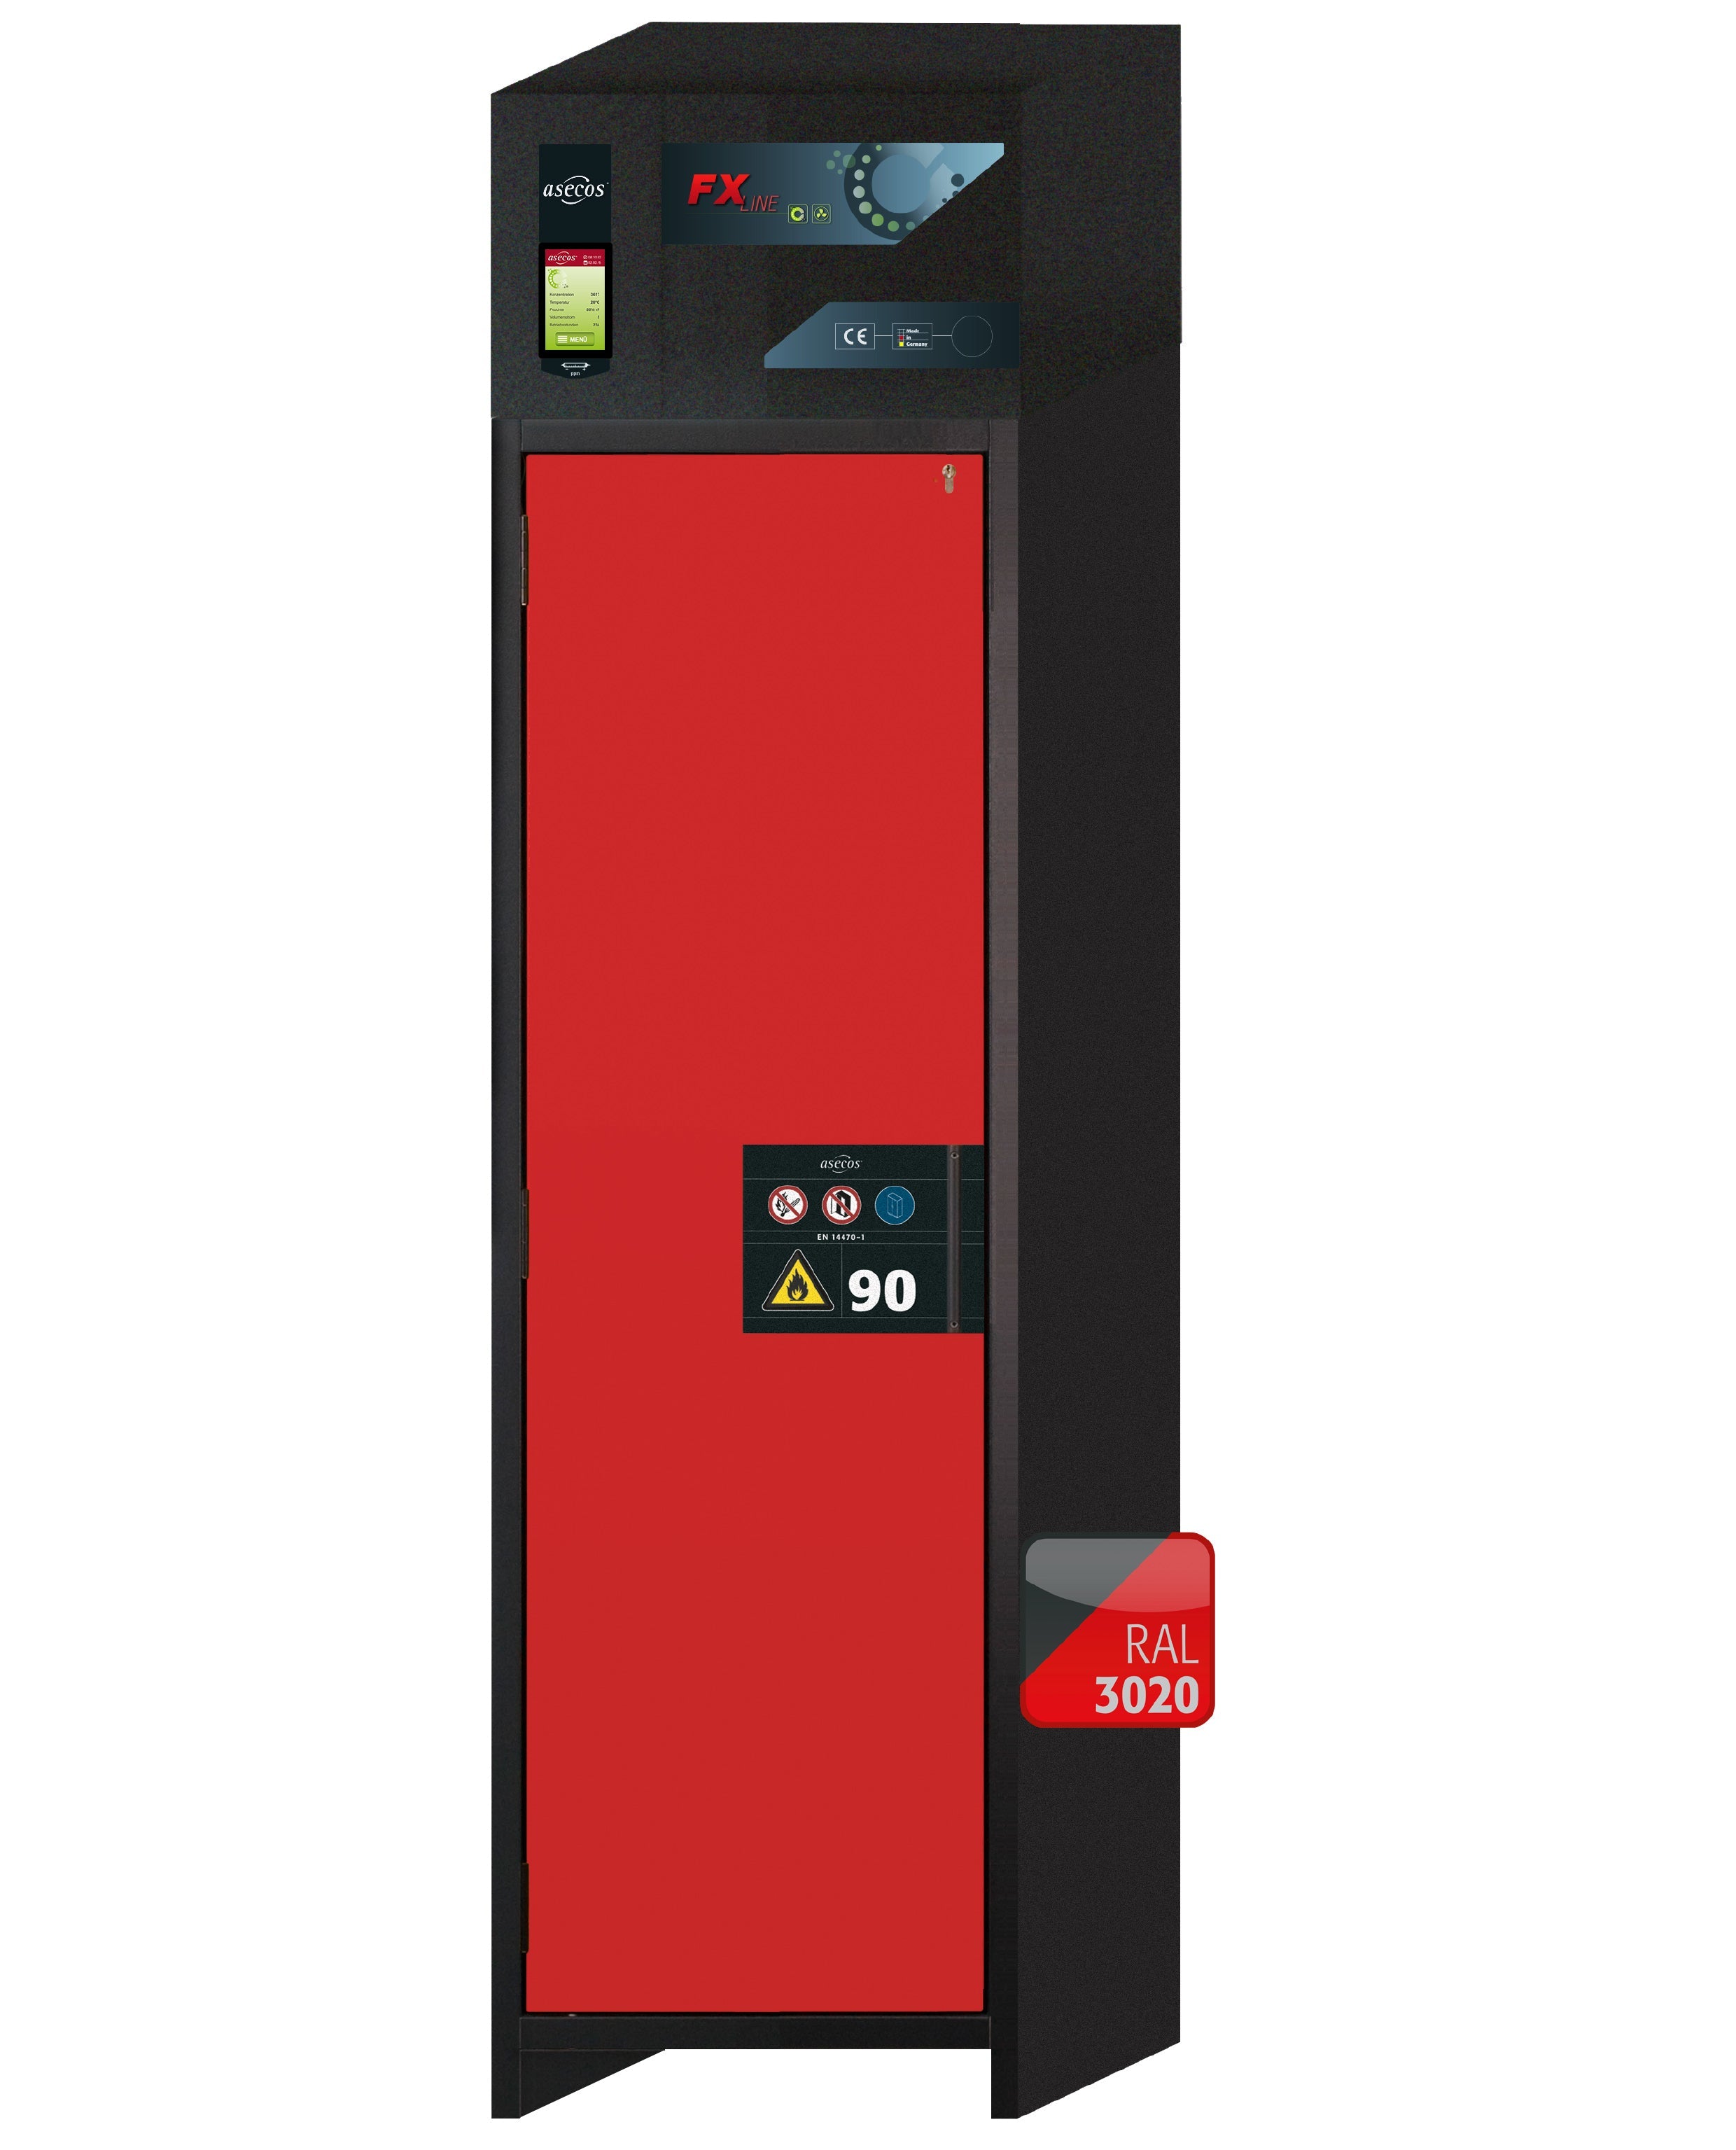 Armoire de filtration d'air de recirculation de type 90 FX-PEGASUS-90 modèle FX90.229.060.WDAC en rouge signalisation RAL 3020 avec 3 étagères standard (acier inoxydable 1.4301)